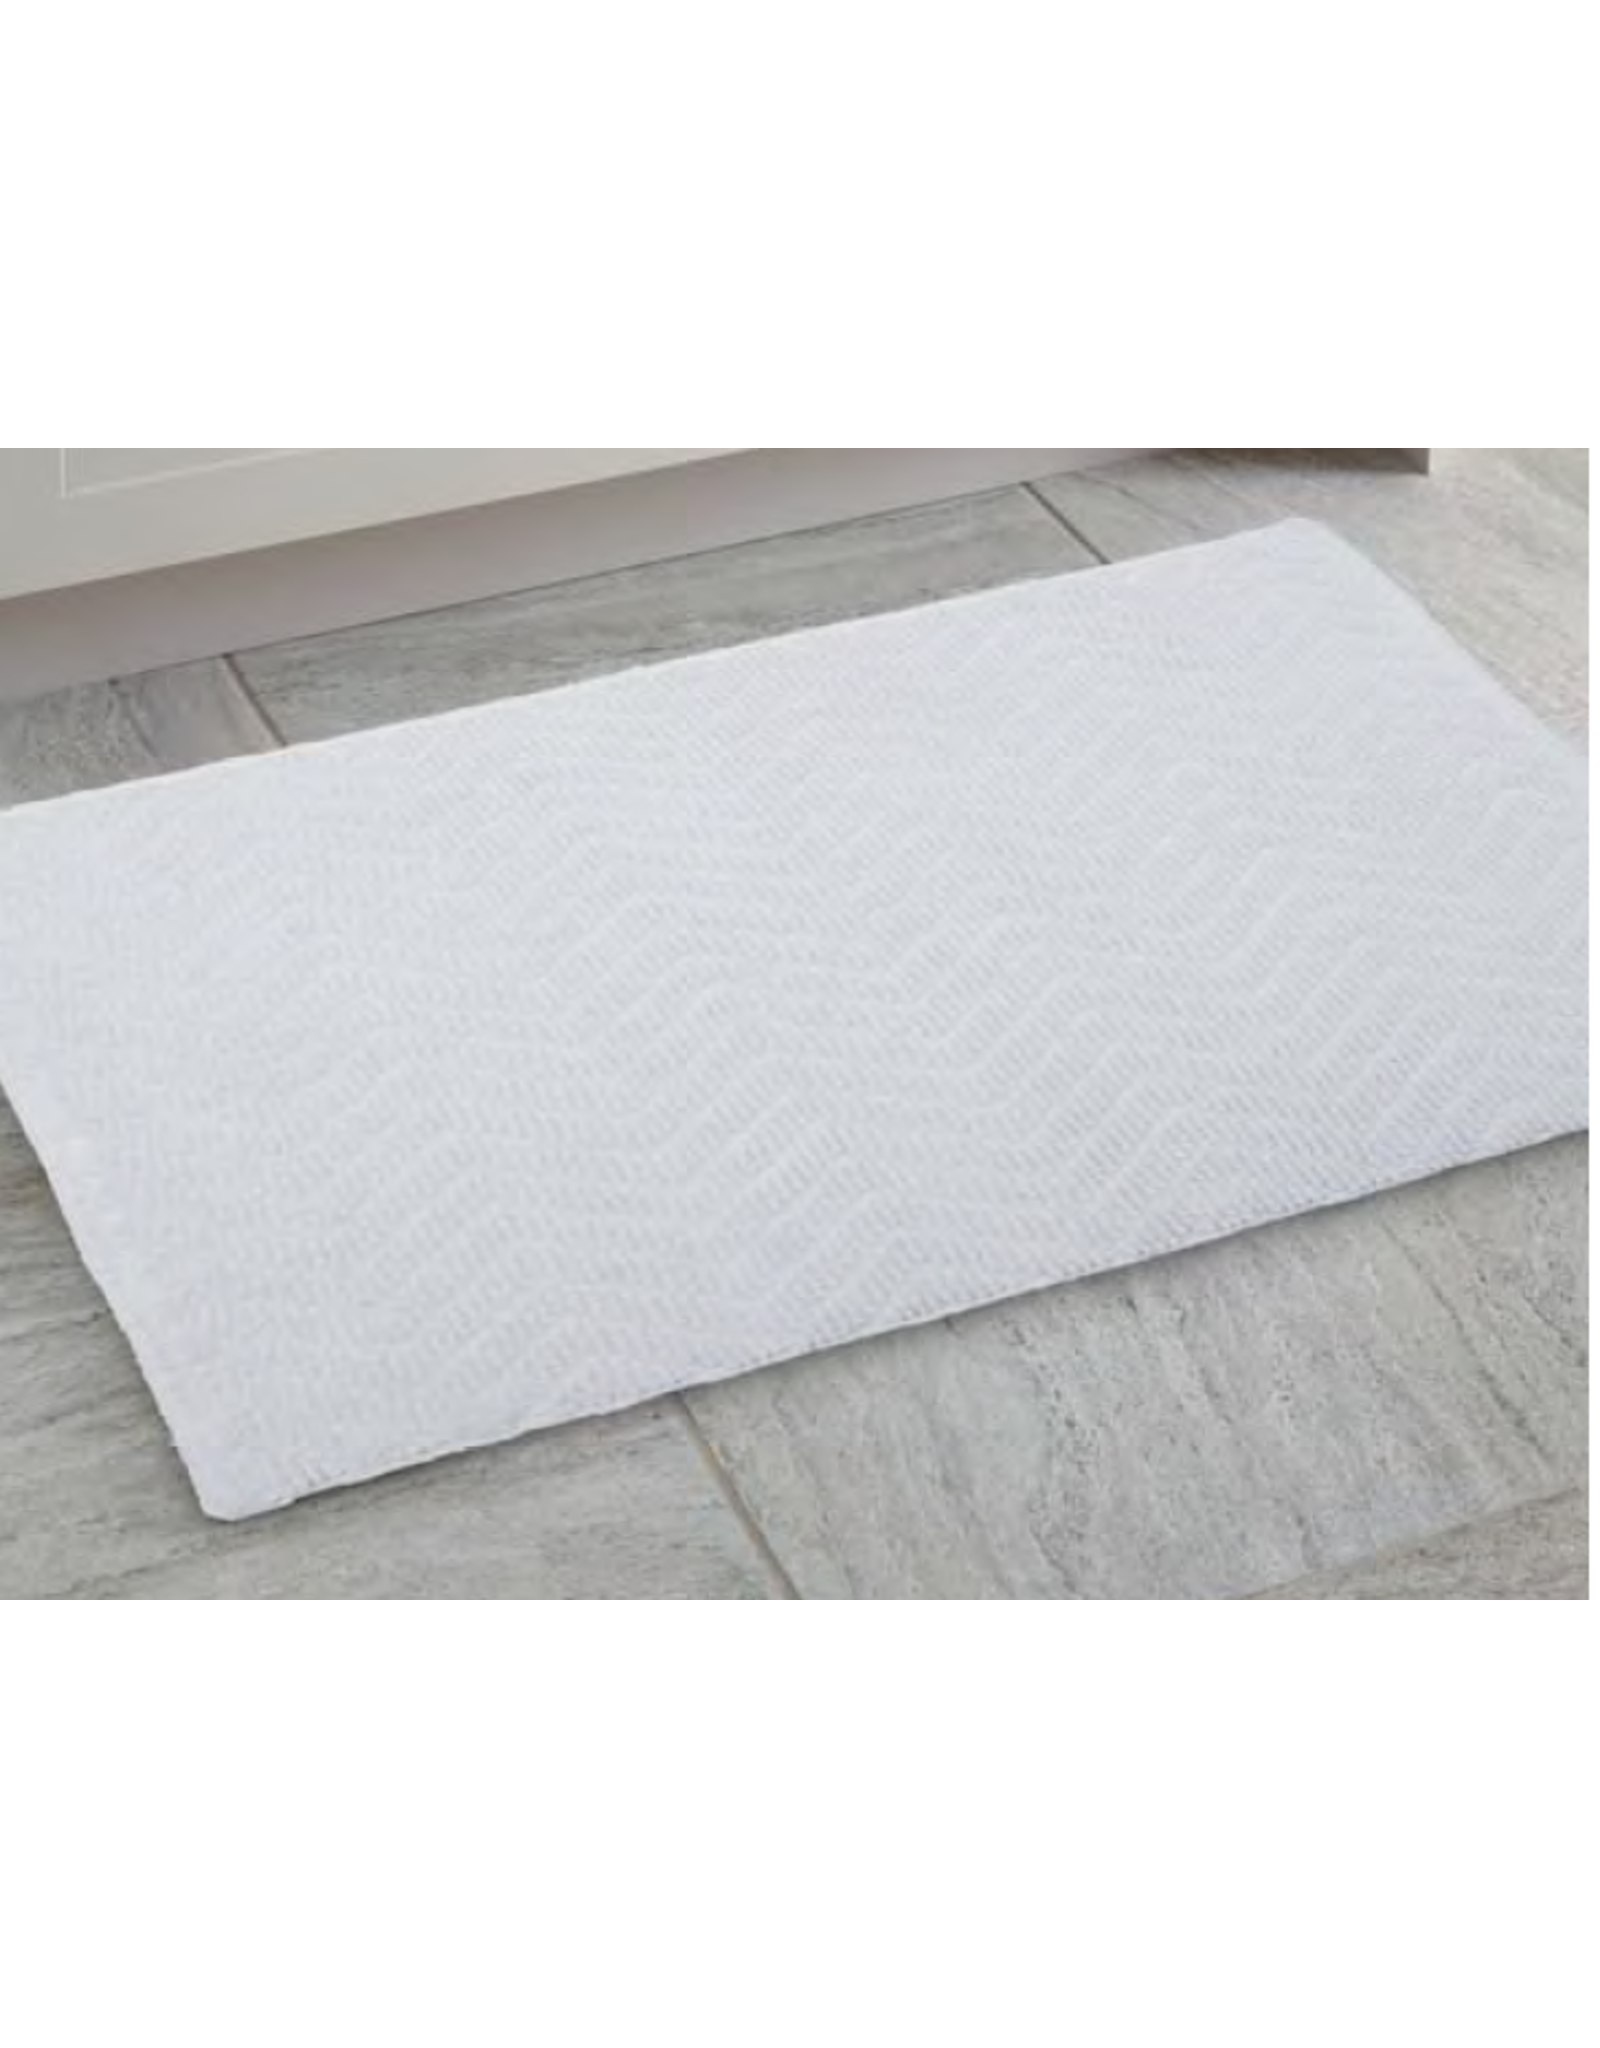 herringbone bath mat, white